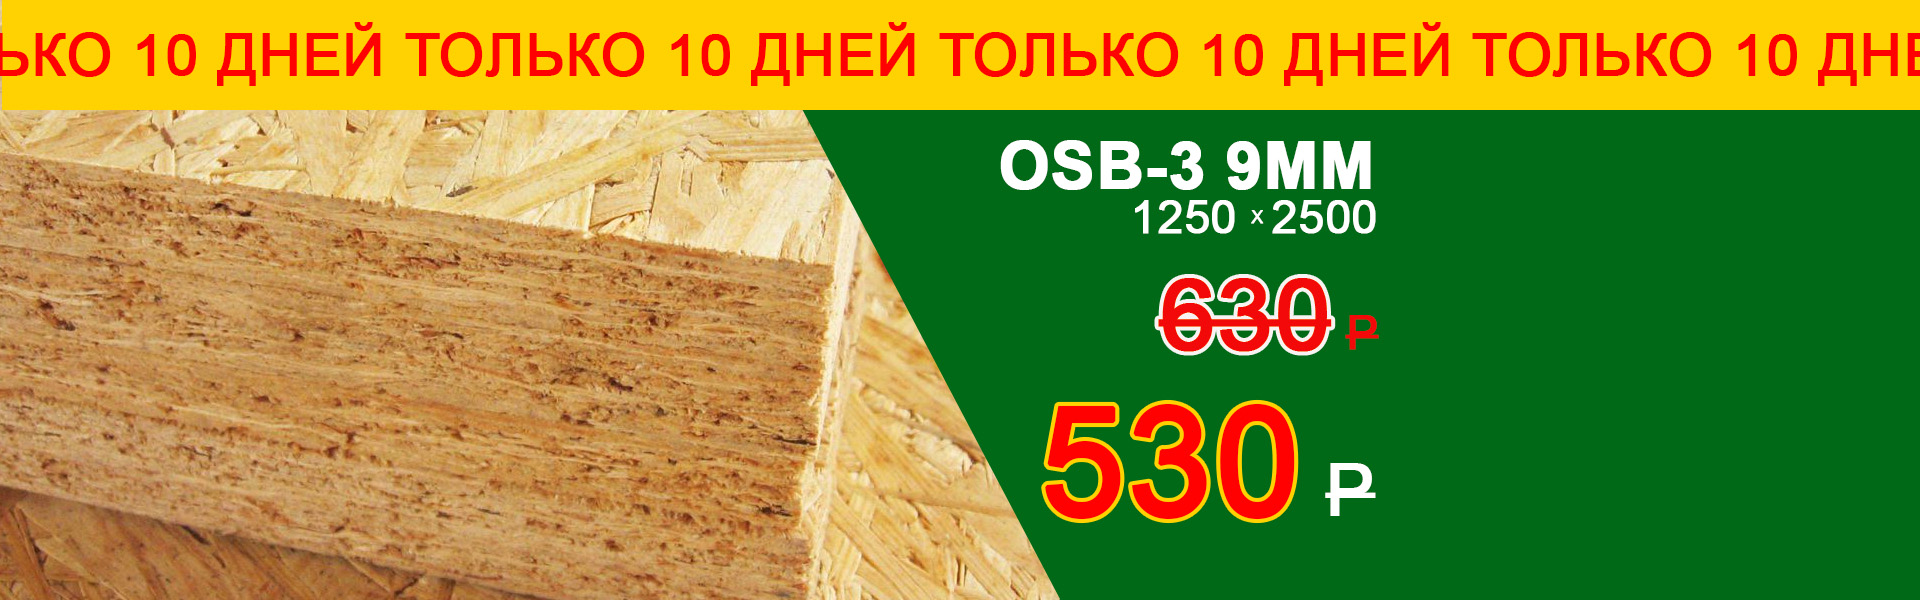 OSB-3 530 рублей только 10 дней